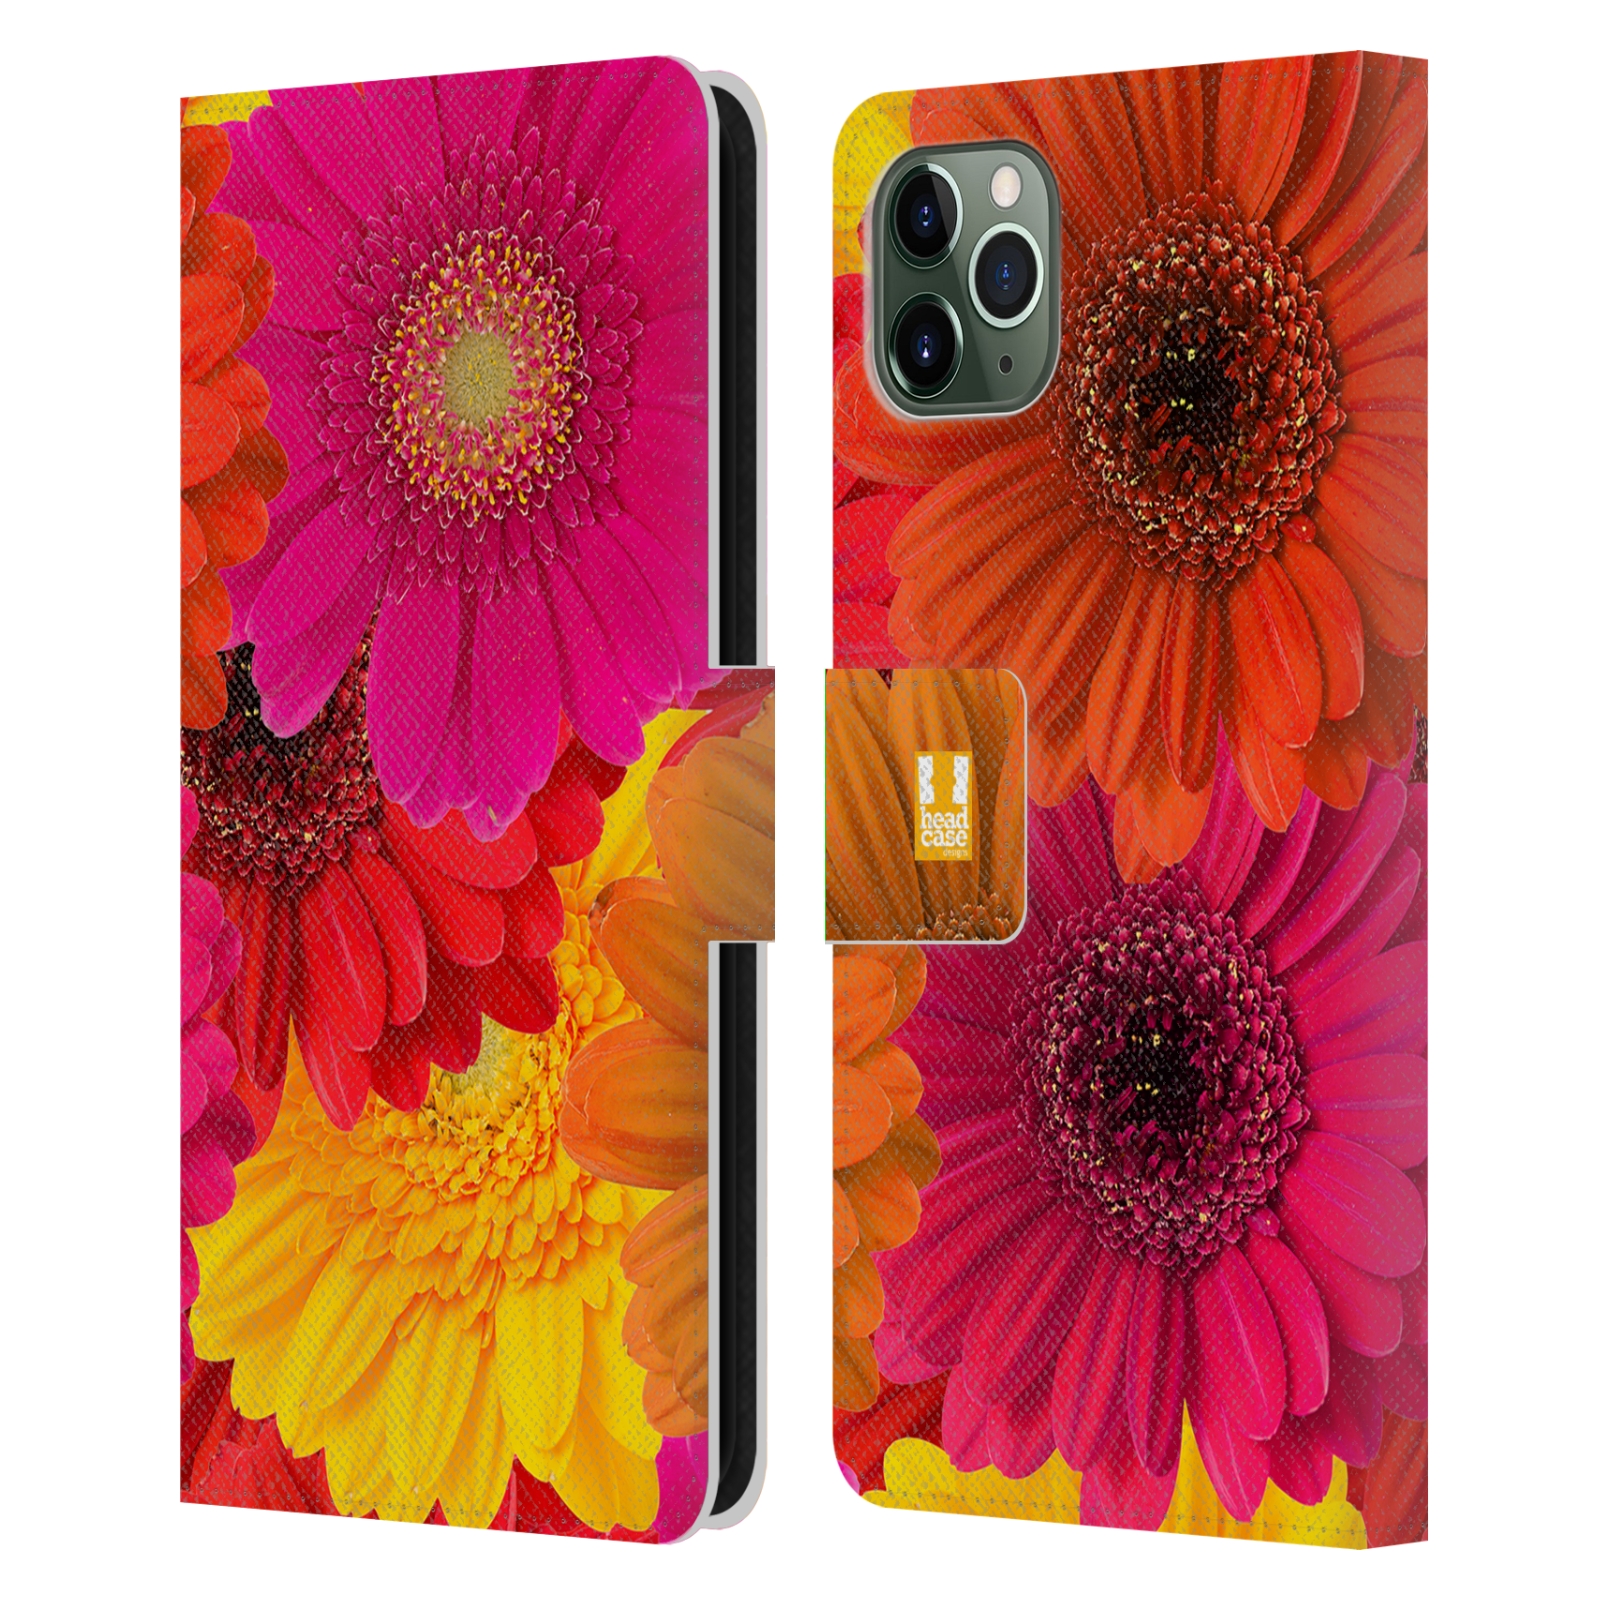 Pouzdro na mobil Apple Iphone 11 PRO MAX květy foto fialová, oranžová GERBERA